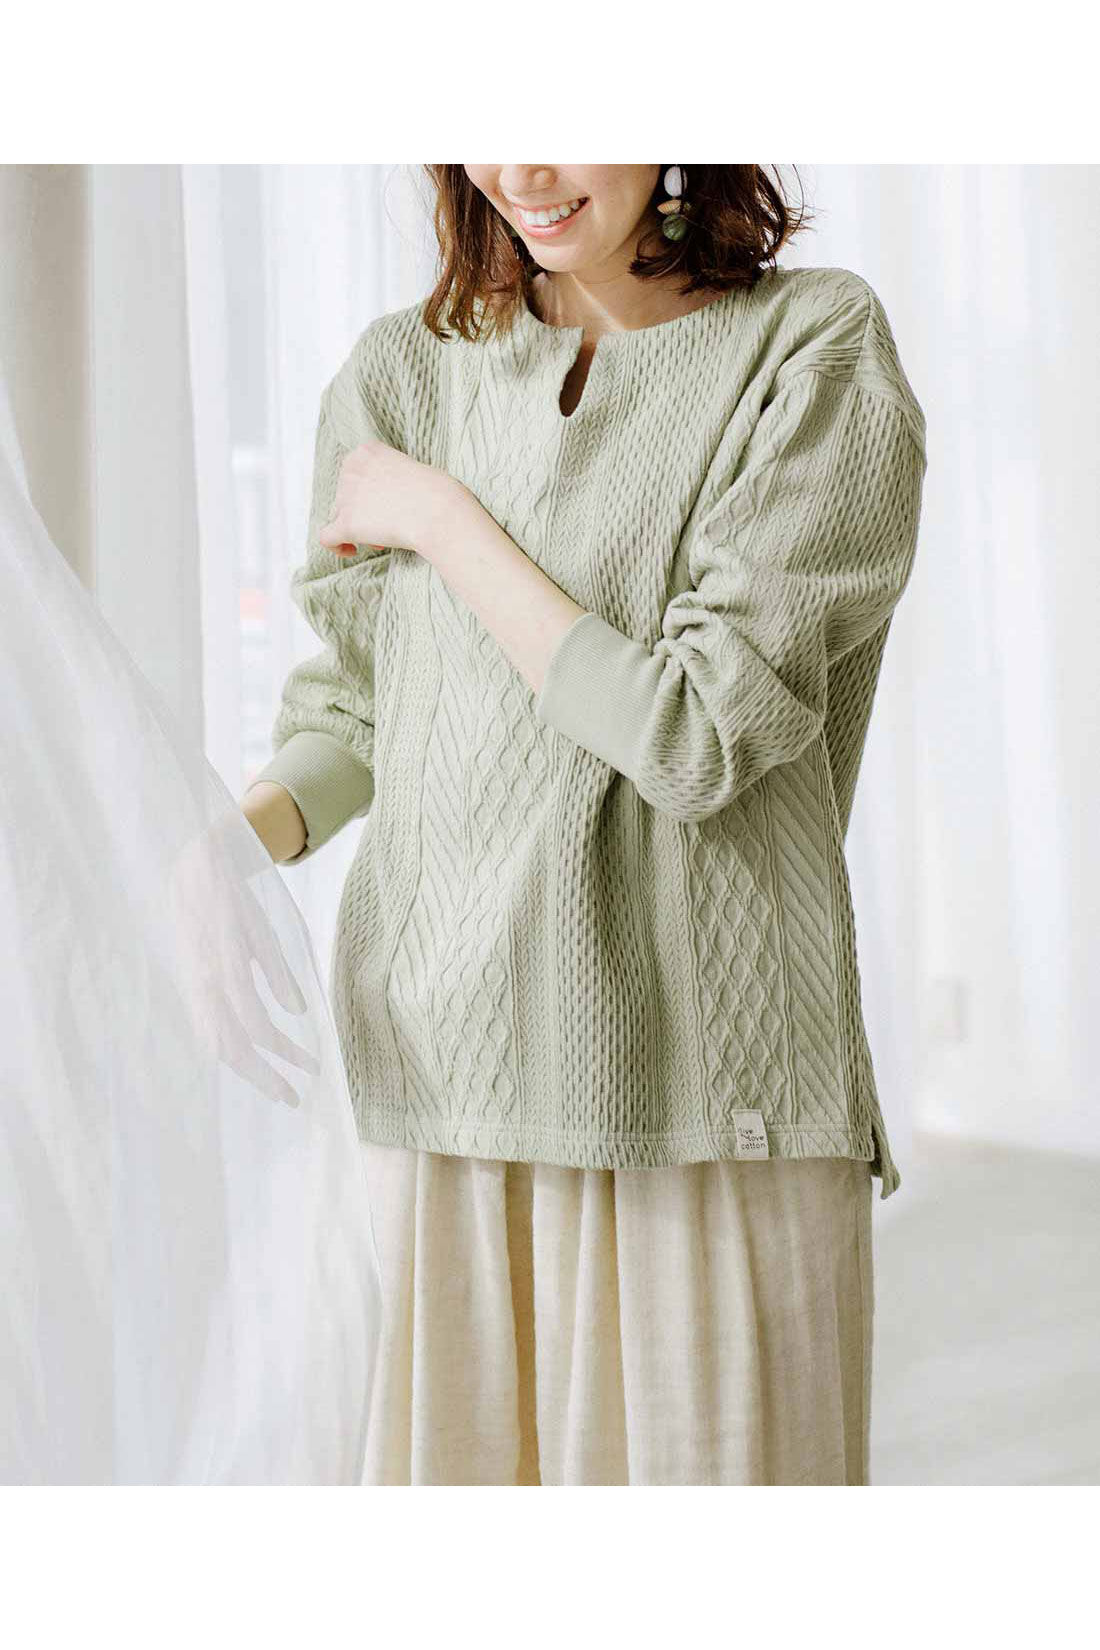 Live in  comfort|Live love cottonプロジェクト　リブ イン コンフォート　編み柄が素敵な袖口リブオーガニックコットントップス〈ホワイト〉|※着用イメージです。お届けするカラーとは異なります。